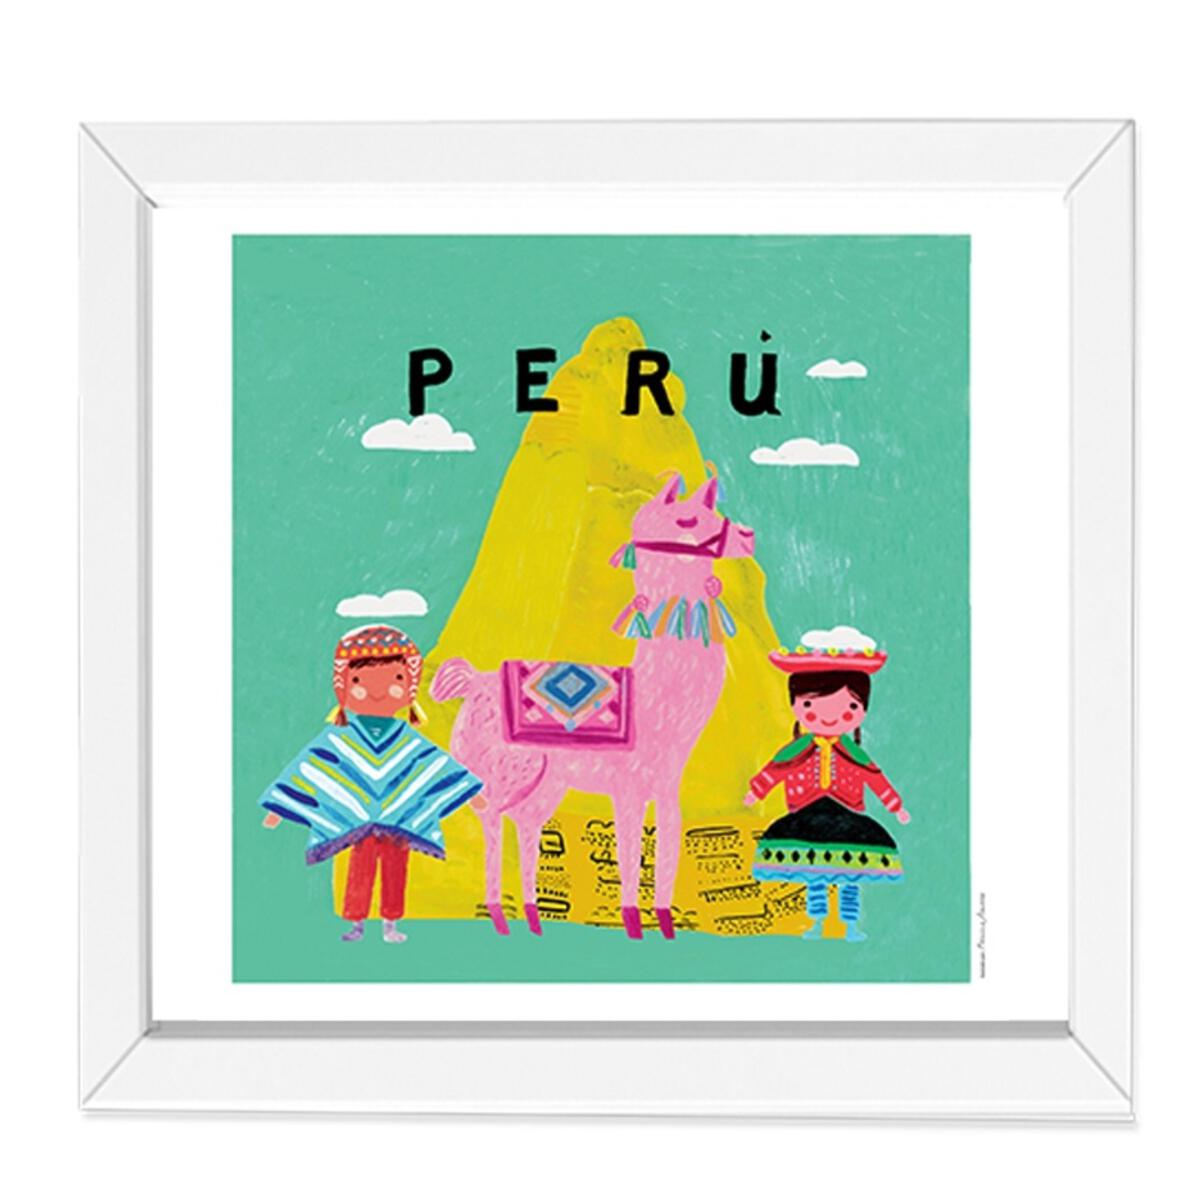 Perú Art Print